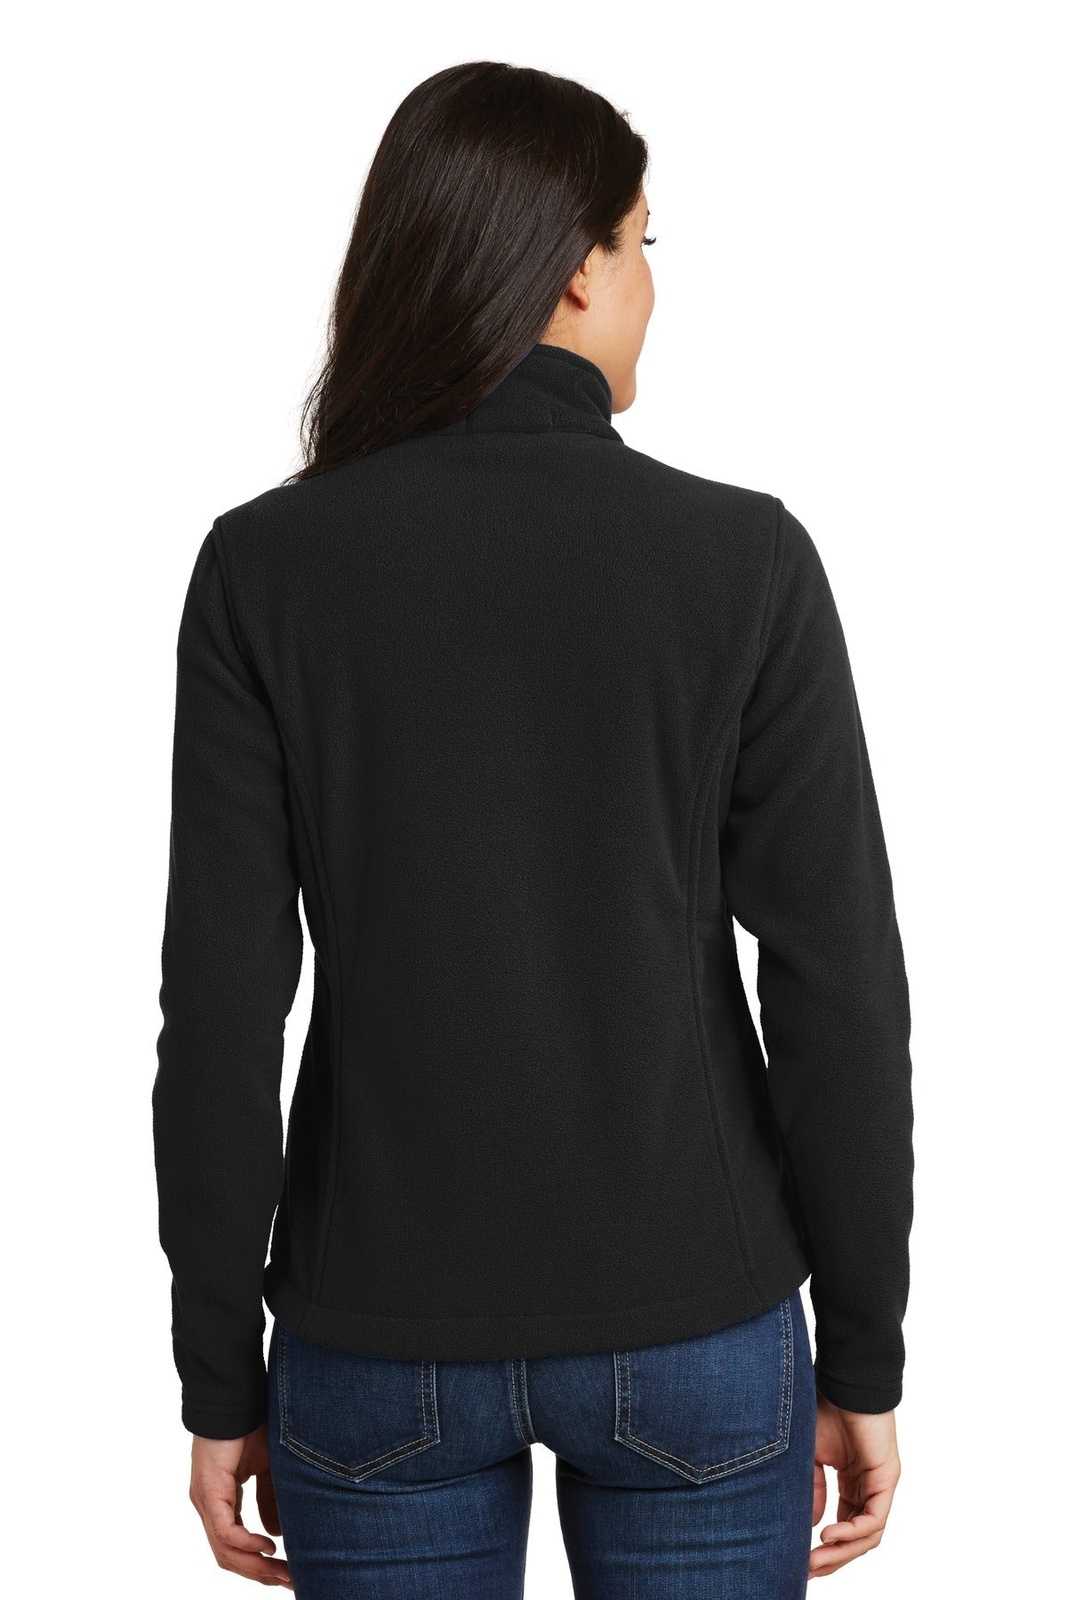 Port Authority L217 Ladies Value Fleece Jacket - Black - HIT a Double - 2